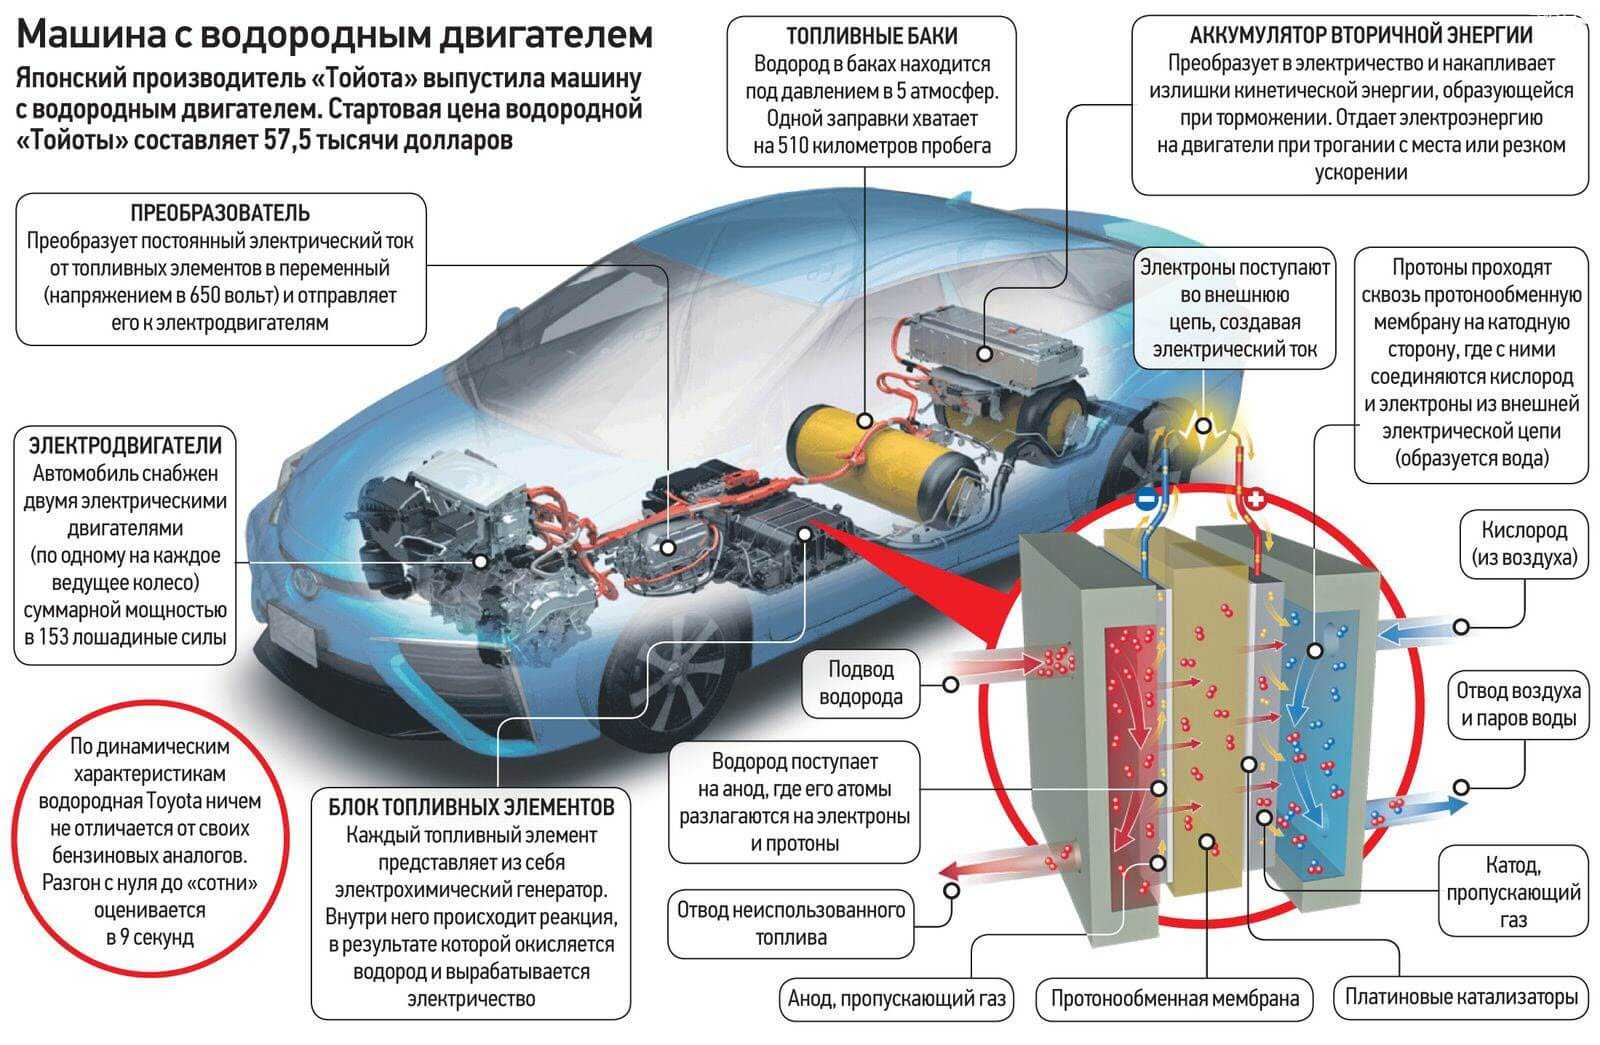 Принцип работы автомобилей на водородном топливе Основные технические характеристики машин Преимущества и недостатки авто работающих на водороде Список машин использующие водород